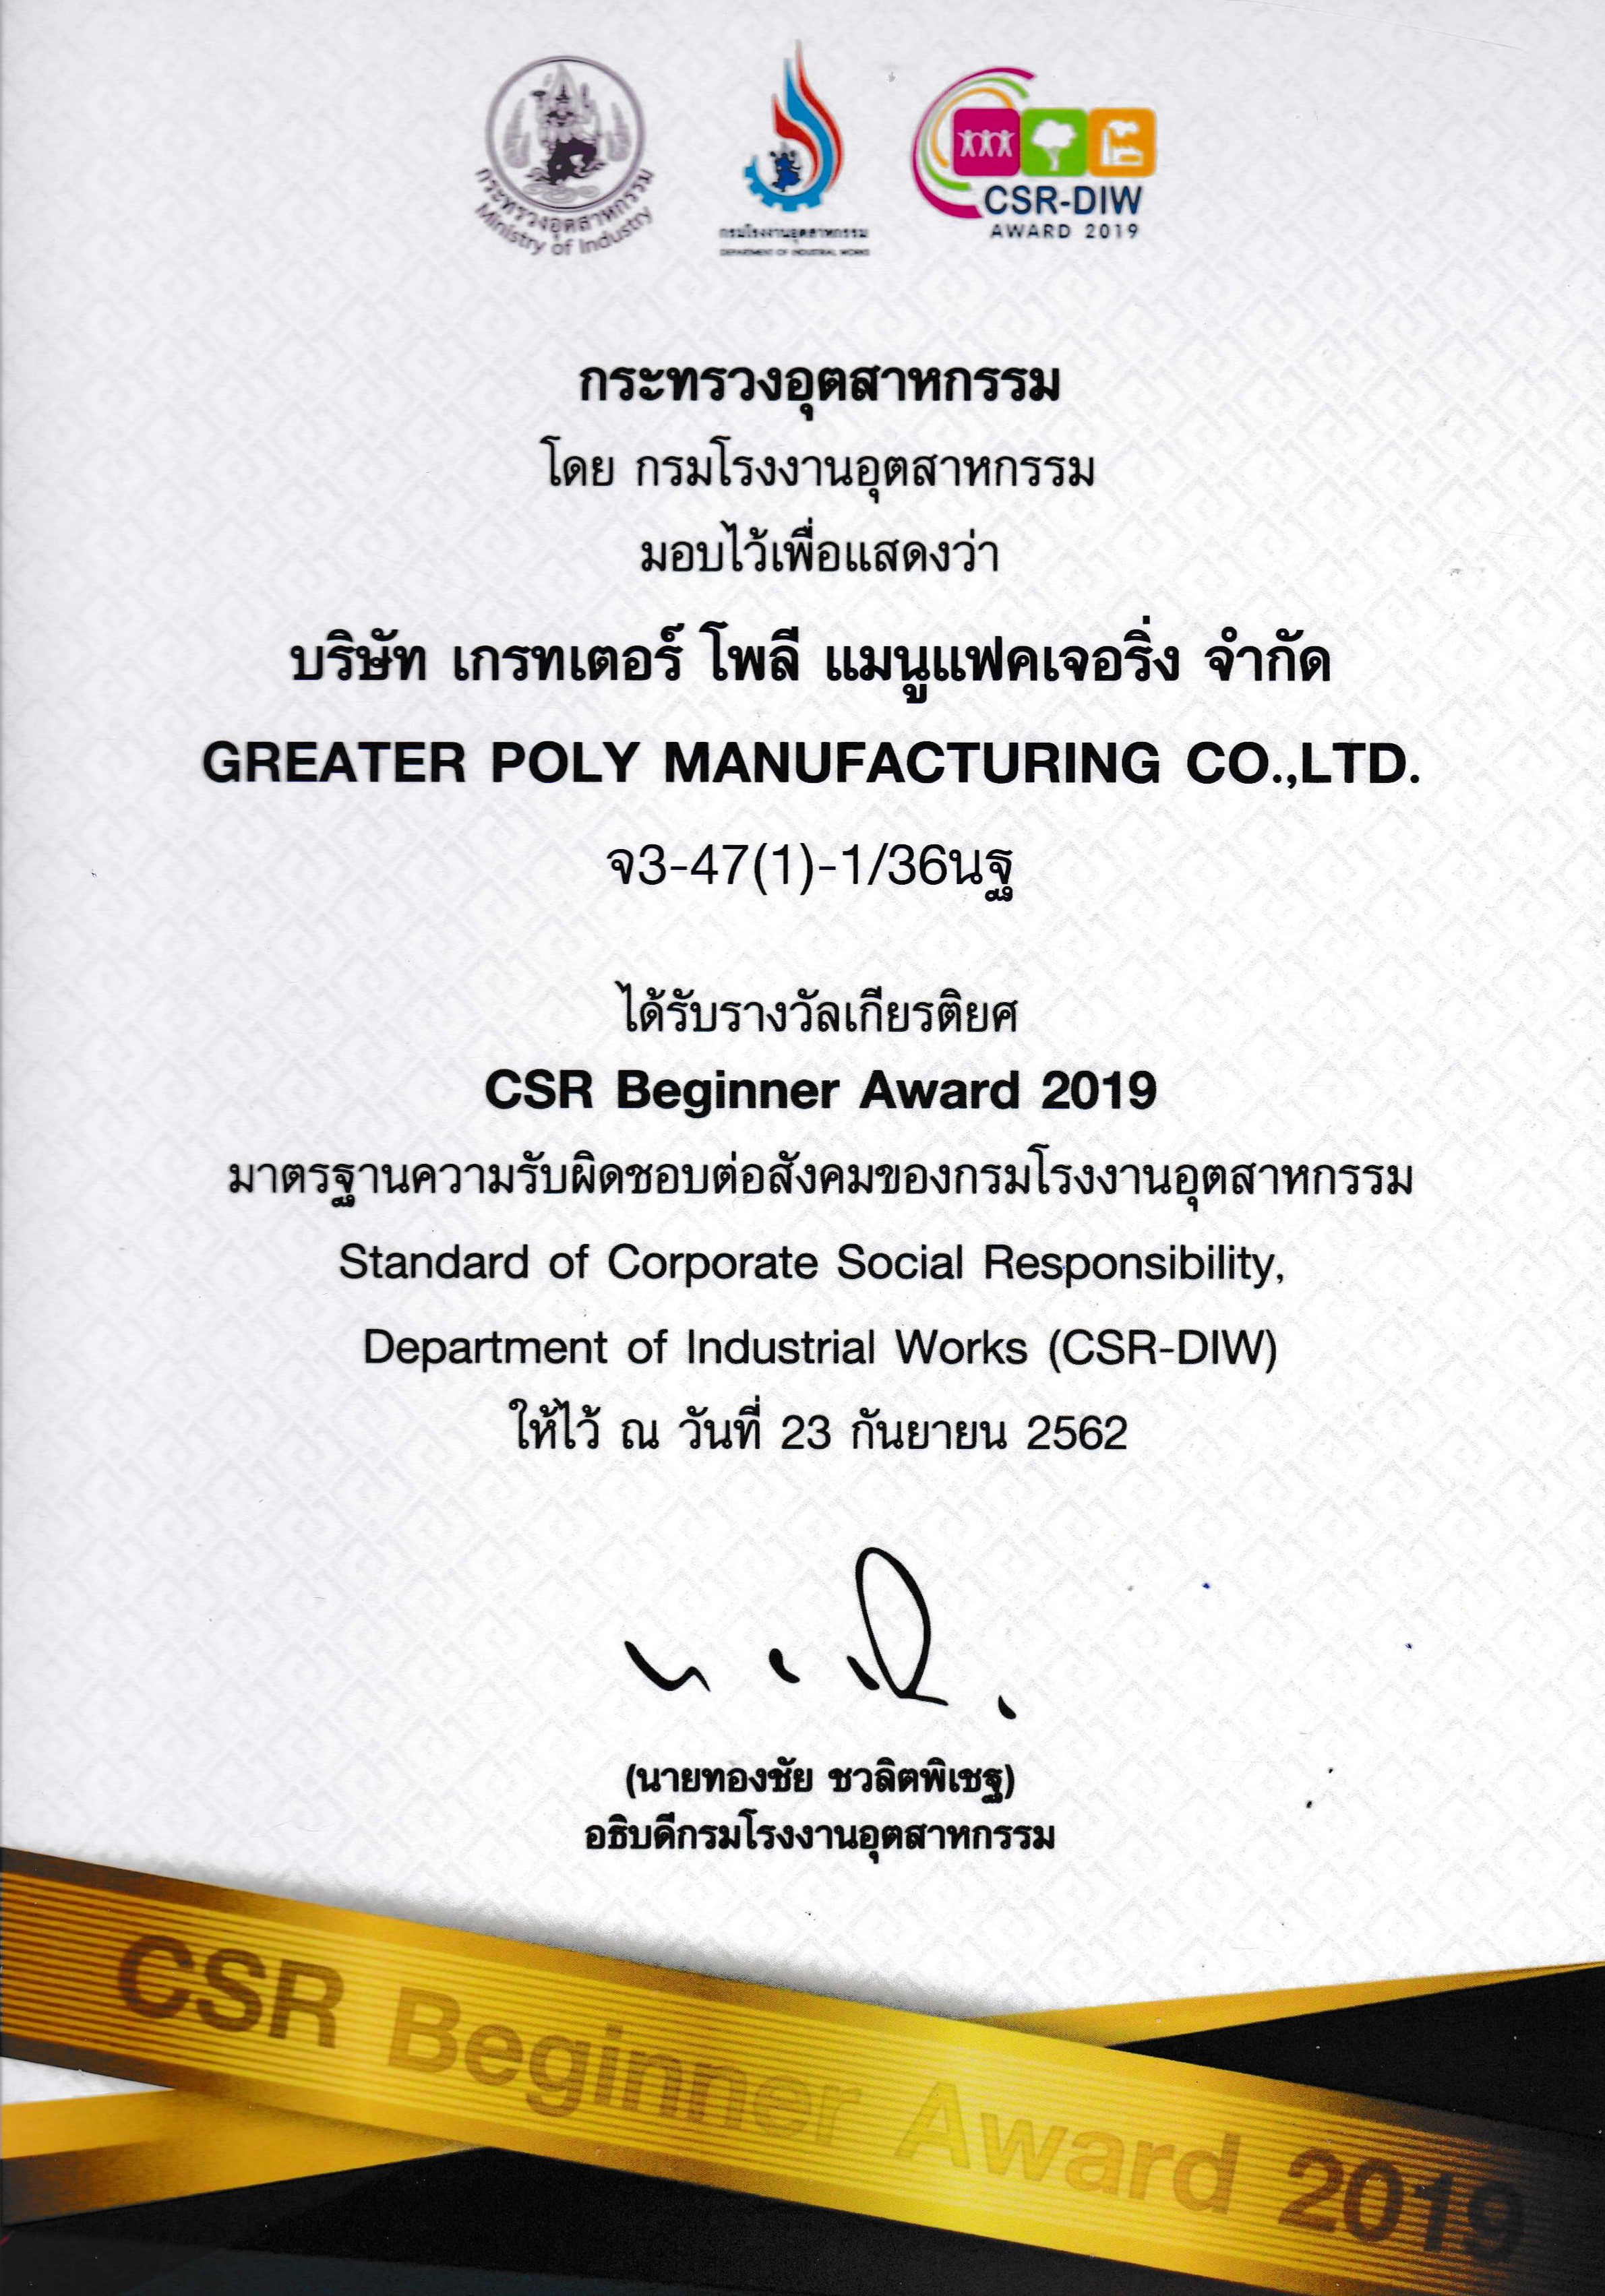 CSR Beginner Award 2019